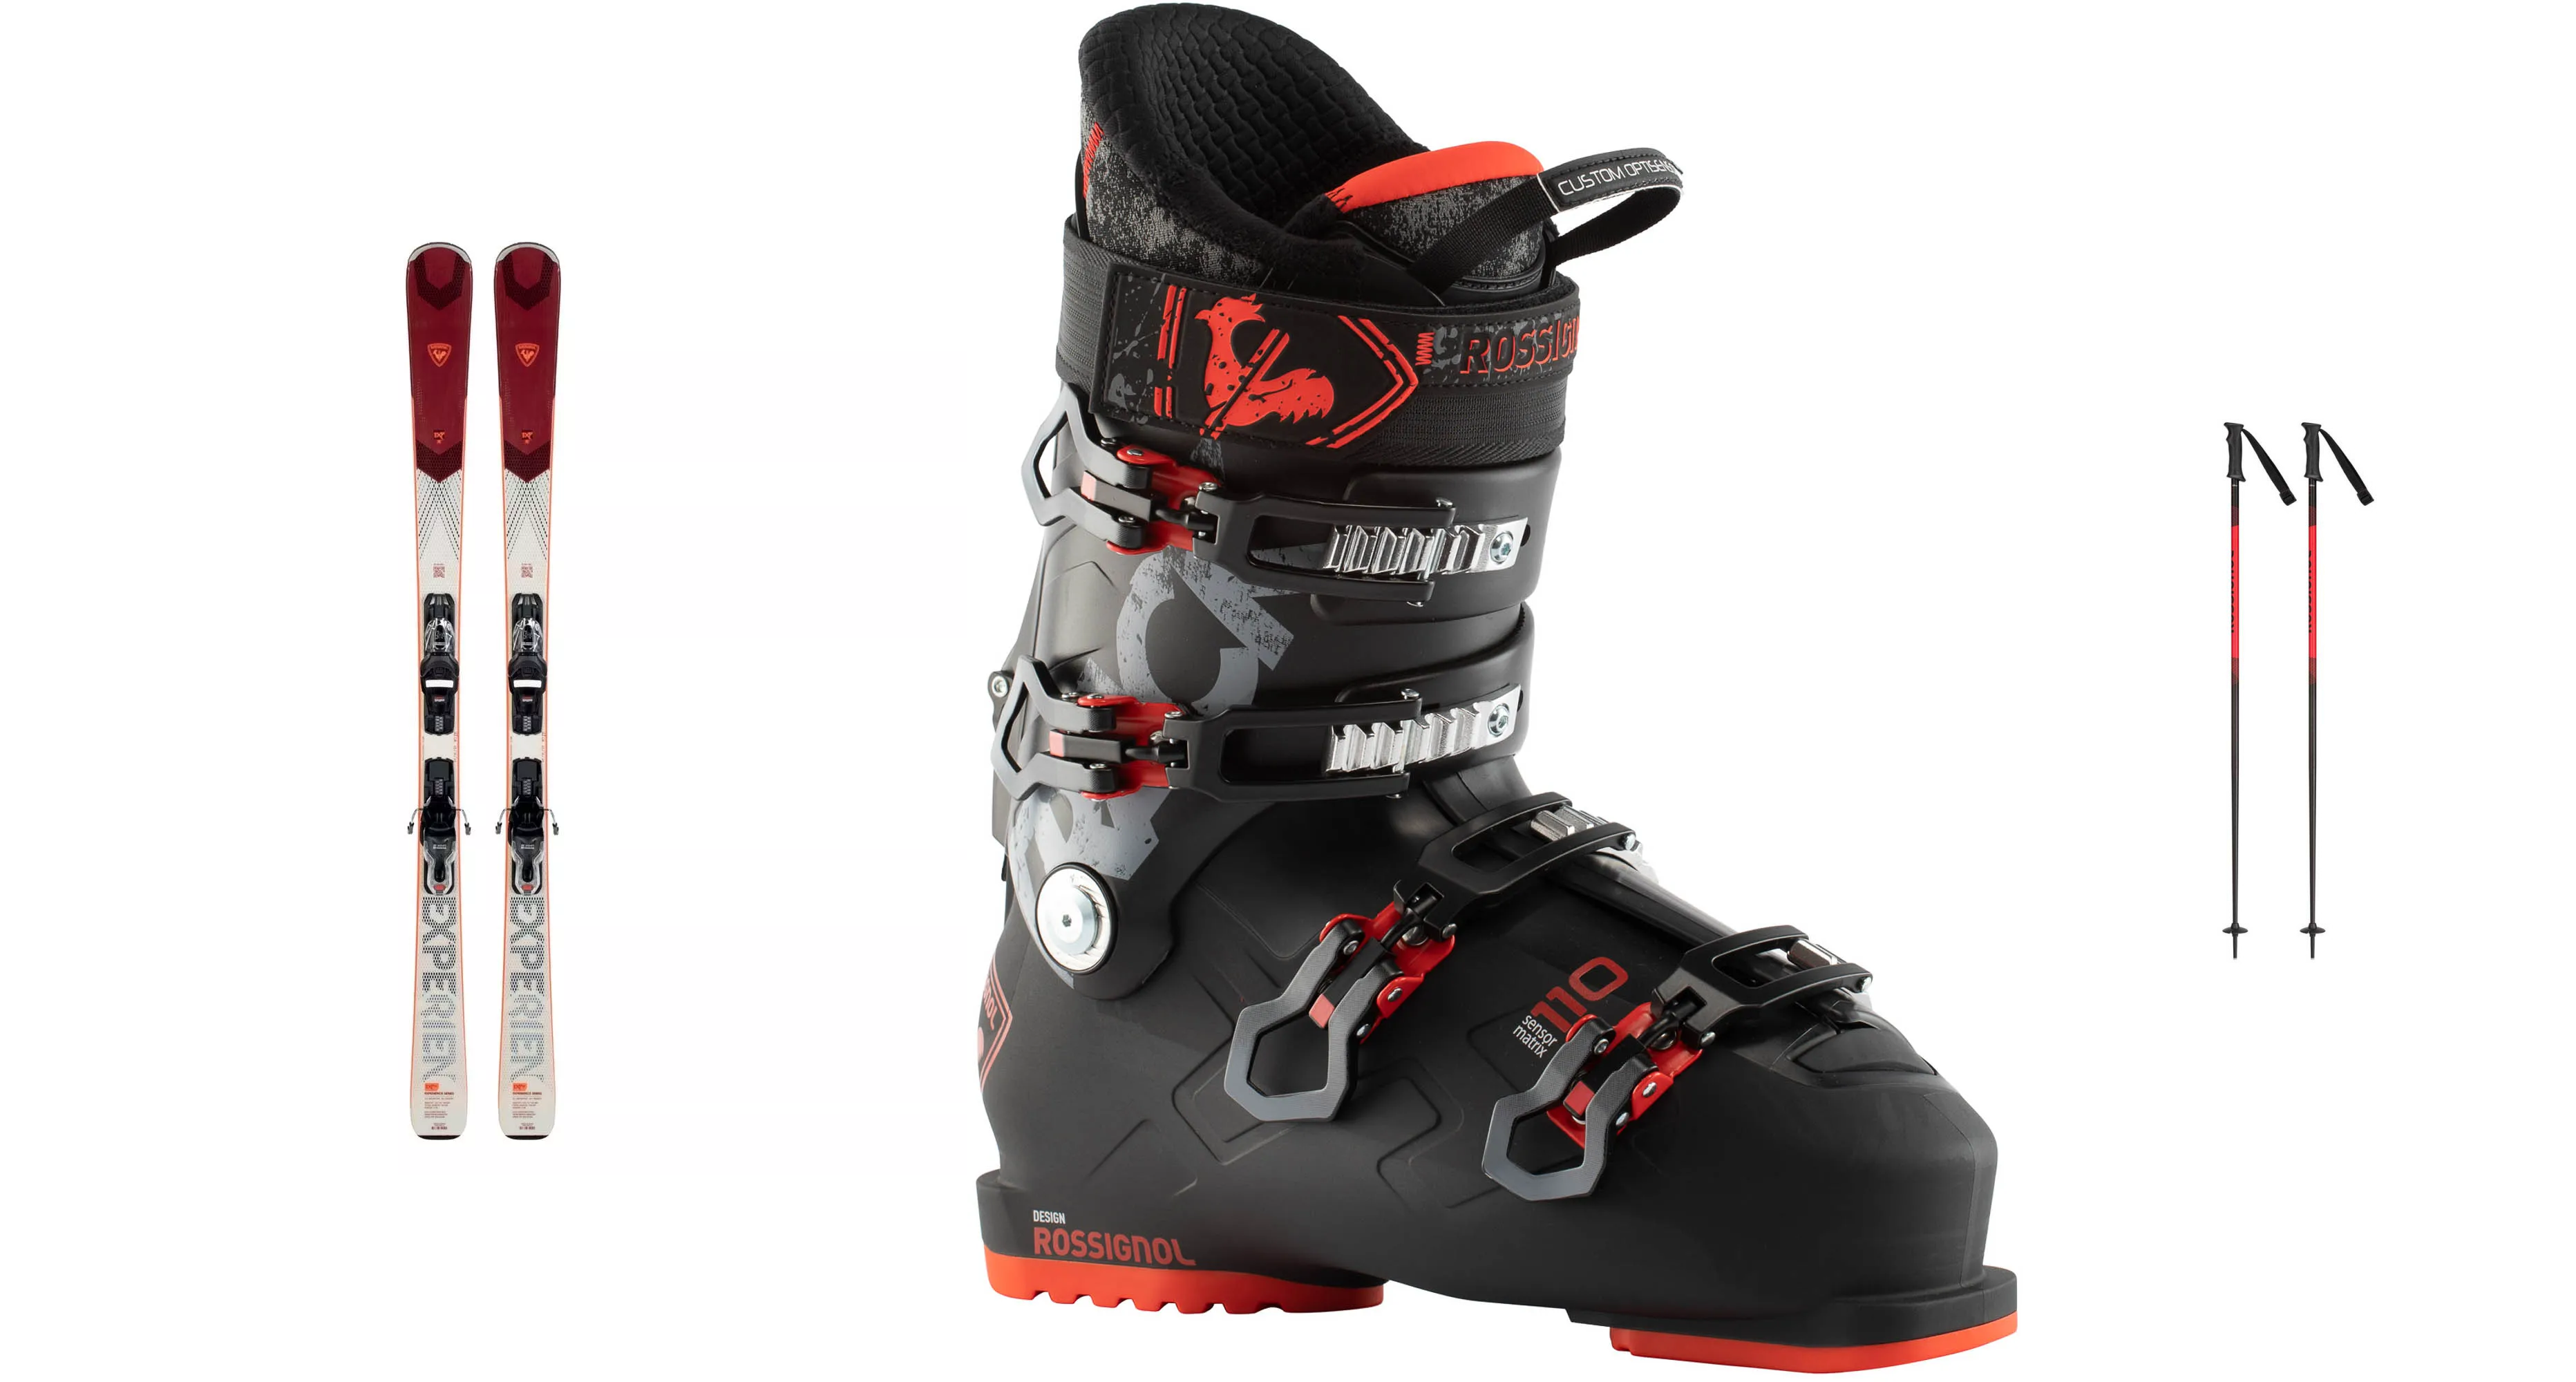 Lyže Rossignol Experience W 76 Xpress, bordove panske+ lyžařské boty Rossignol Trac + hůlky